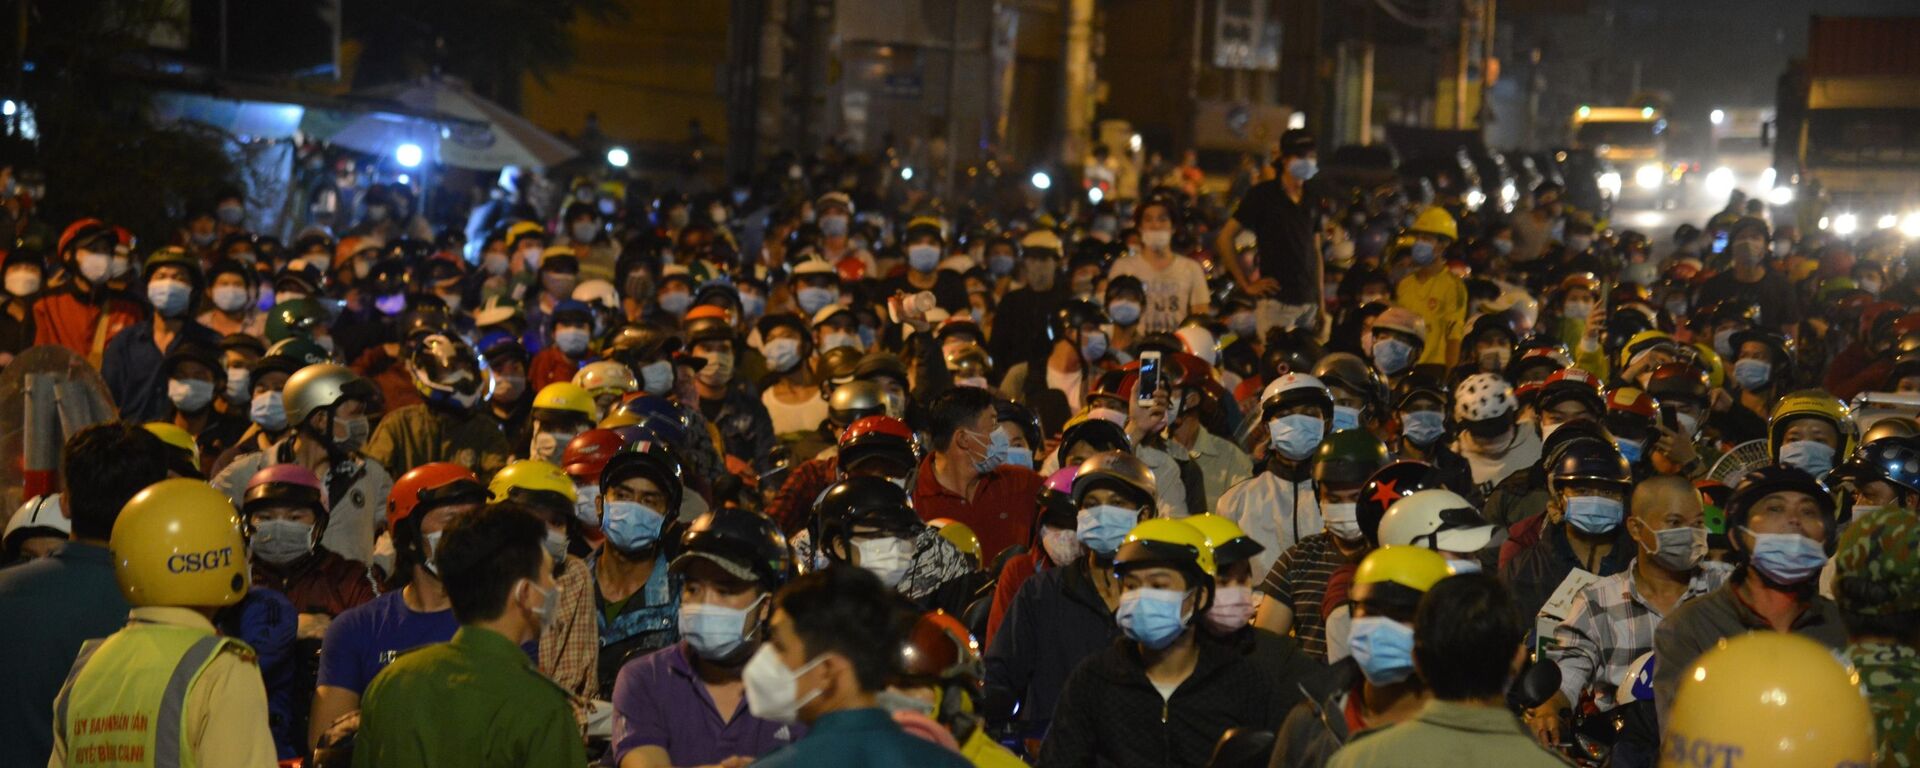 Thành phố Hồ Chí Minh: Hàng nghìn người dân đi xe máy tập trung trên Quốc lộ 1 để về quê trong đêm - Sputnik Việt Nam, 1920, 01.10.2021